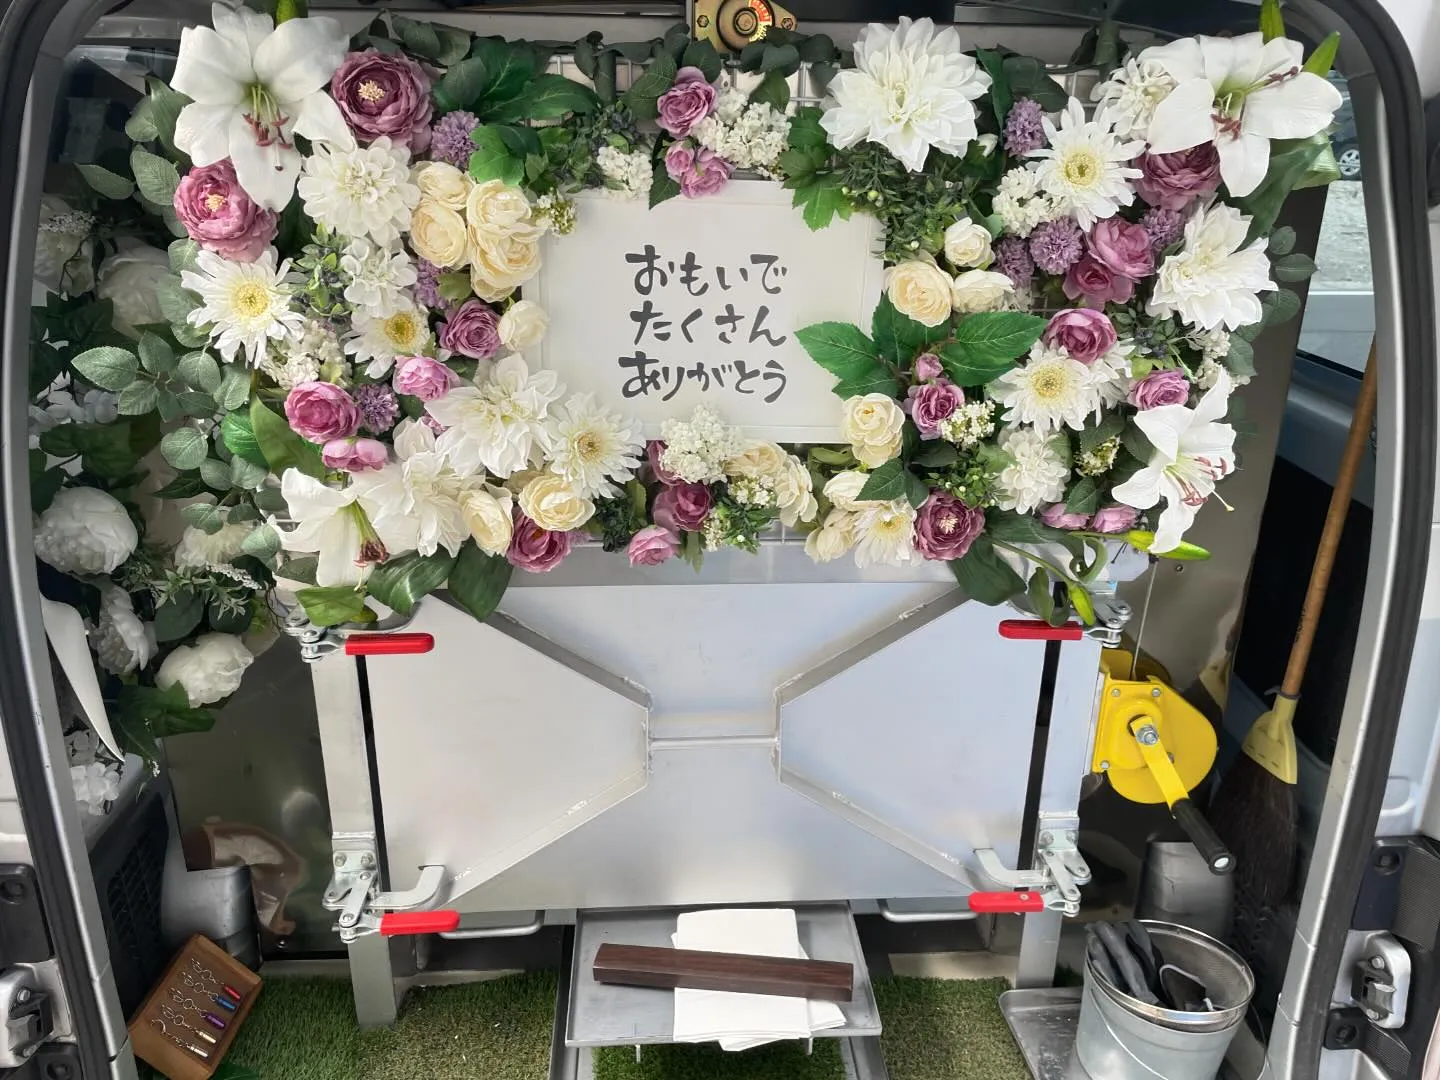 東京都武蔵村山市にてわんちゃんのご火葬に伺いました。